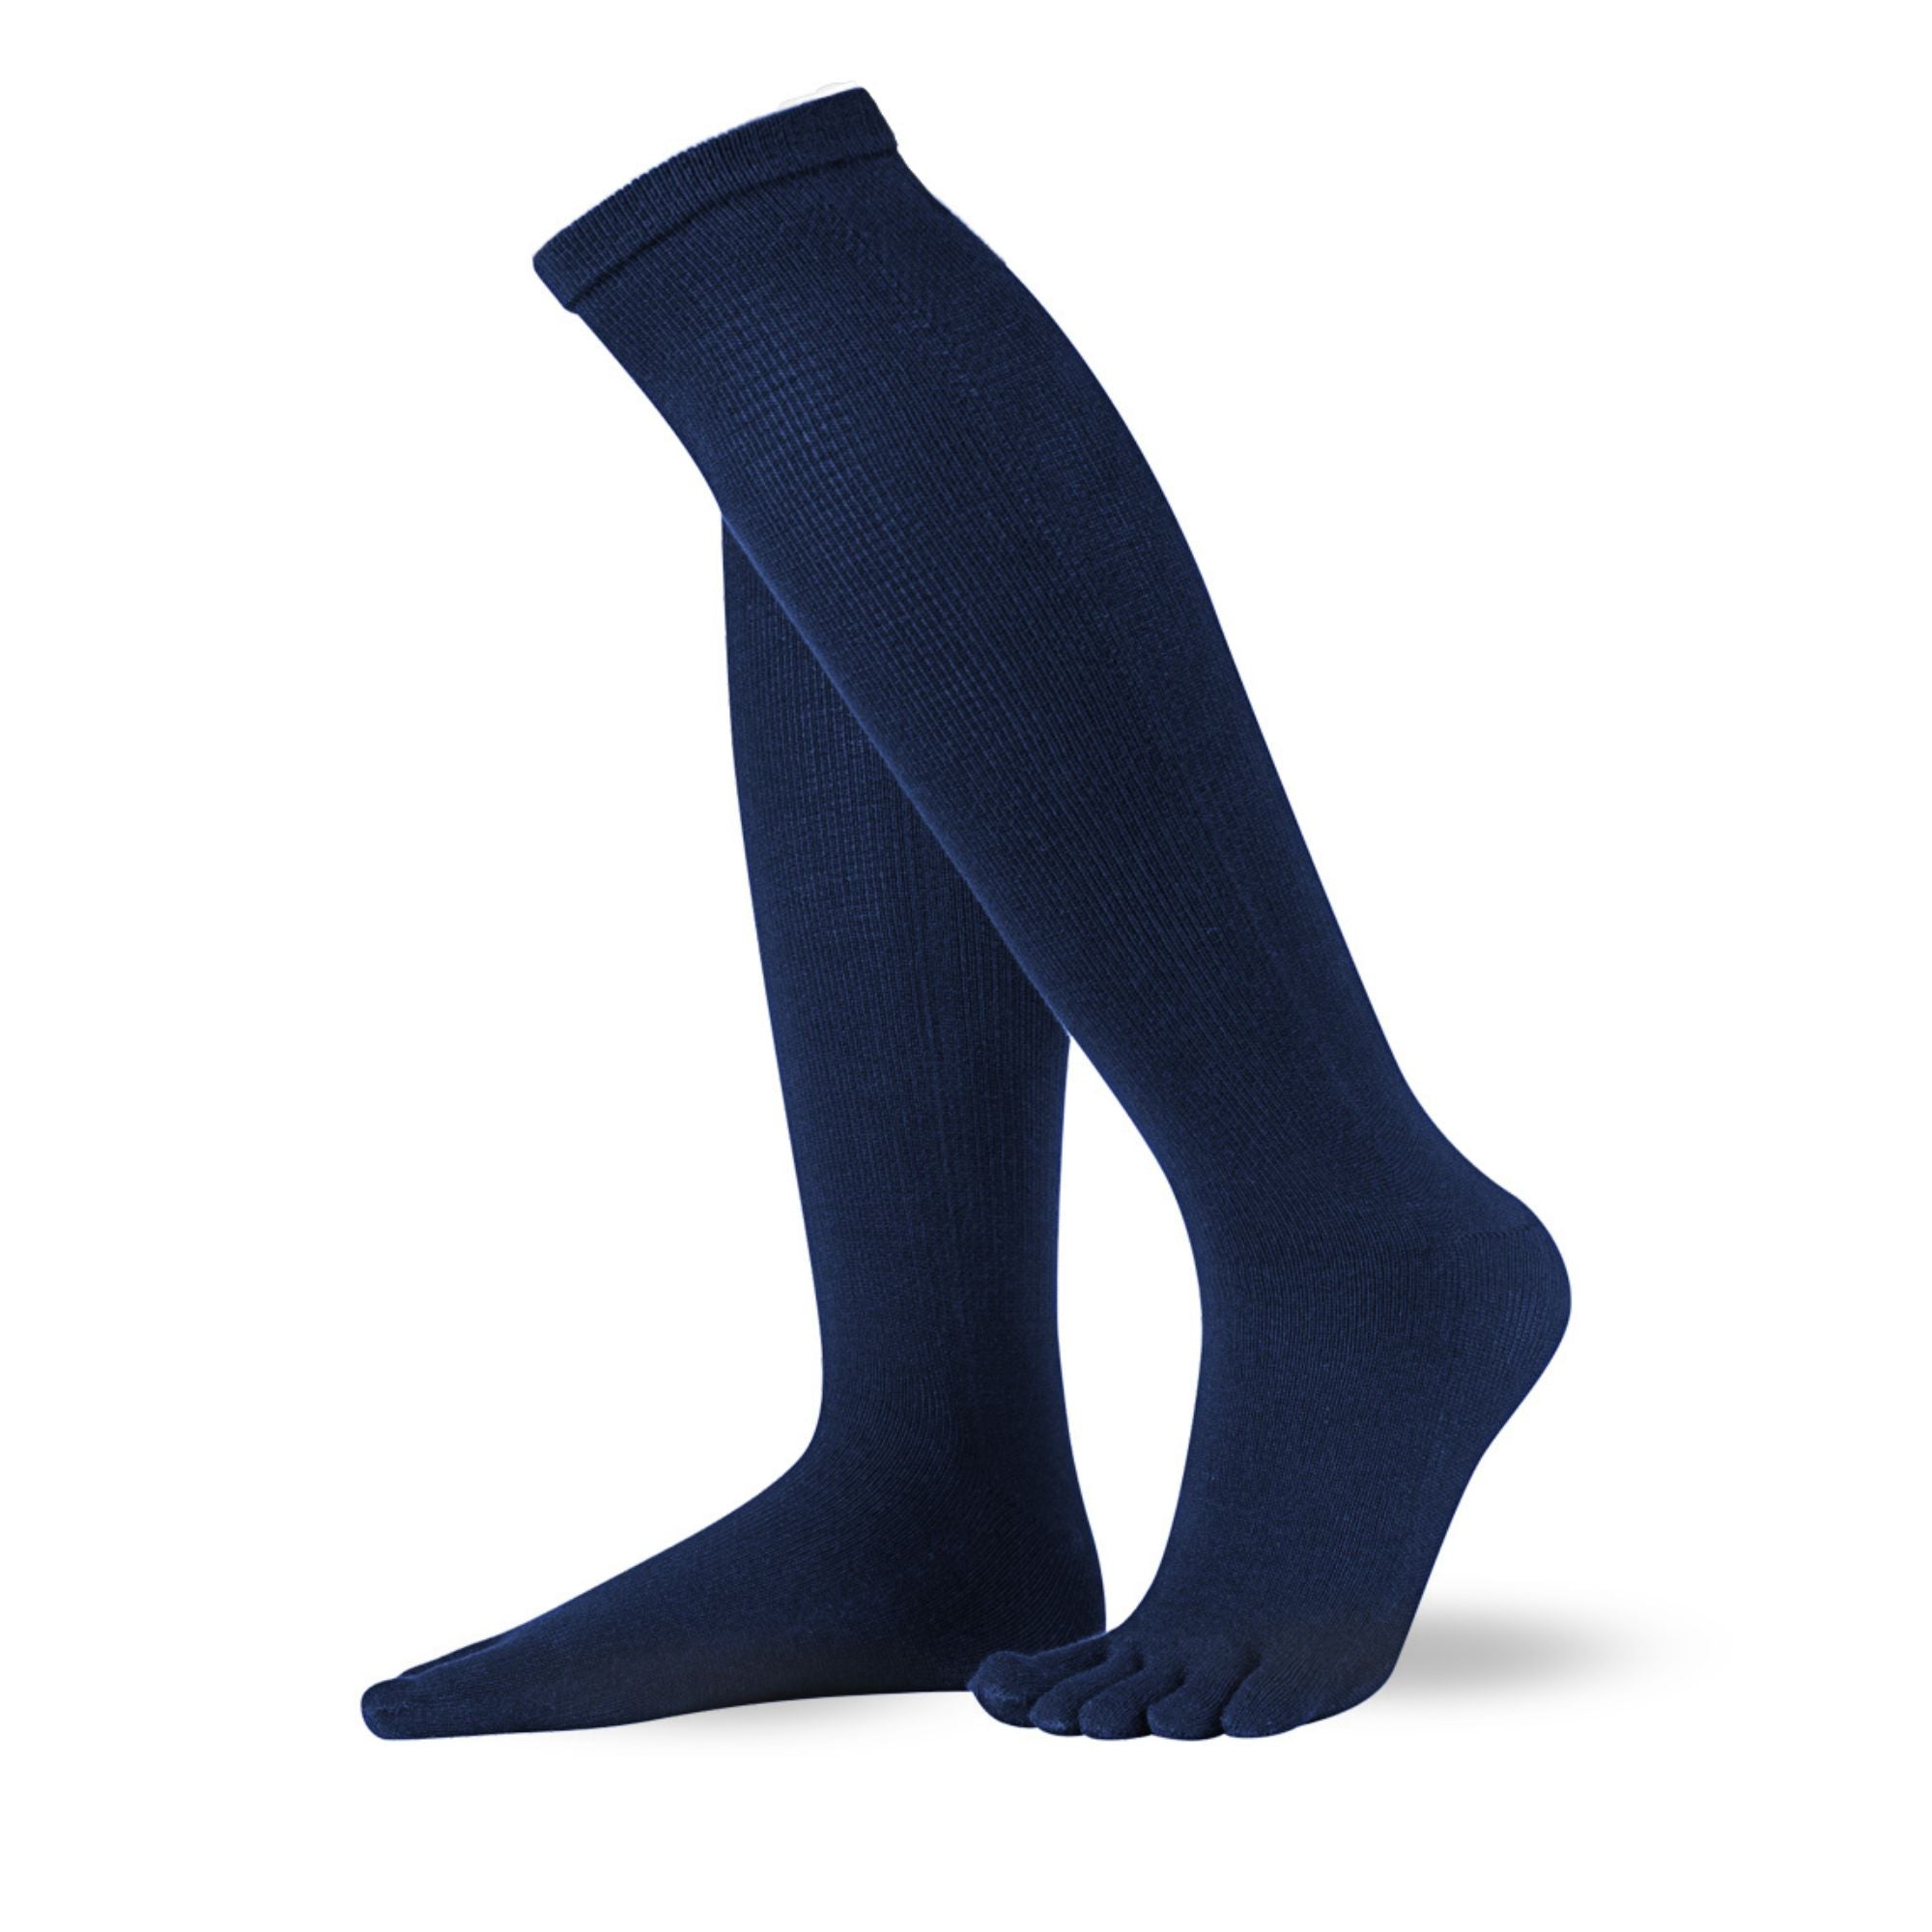 Knitido Essentials Chaussettes pour orteils (coton) longueur au genou par le côté en marine